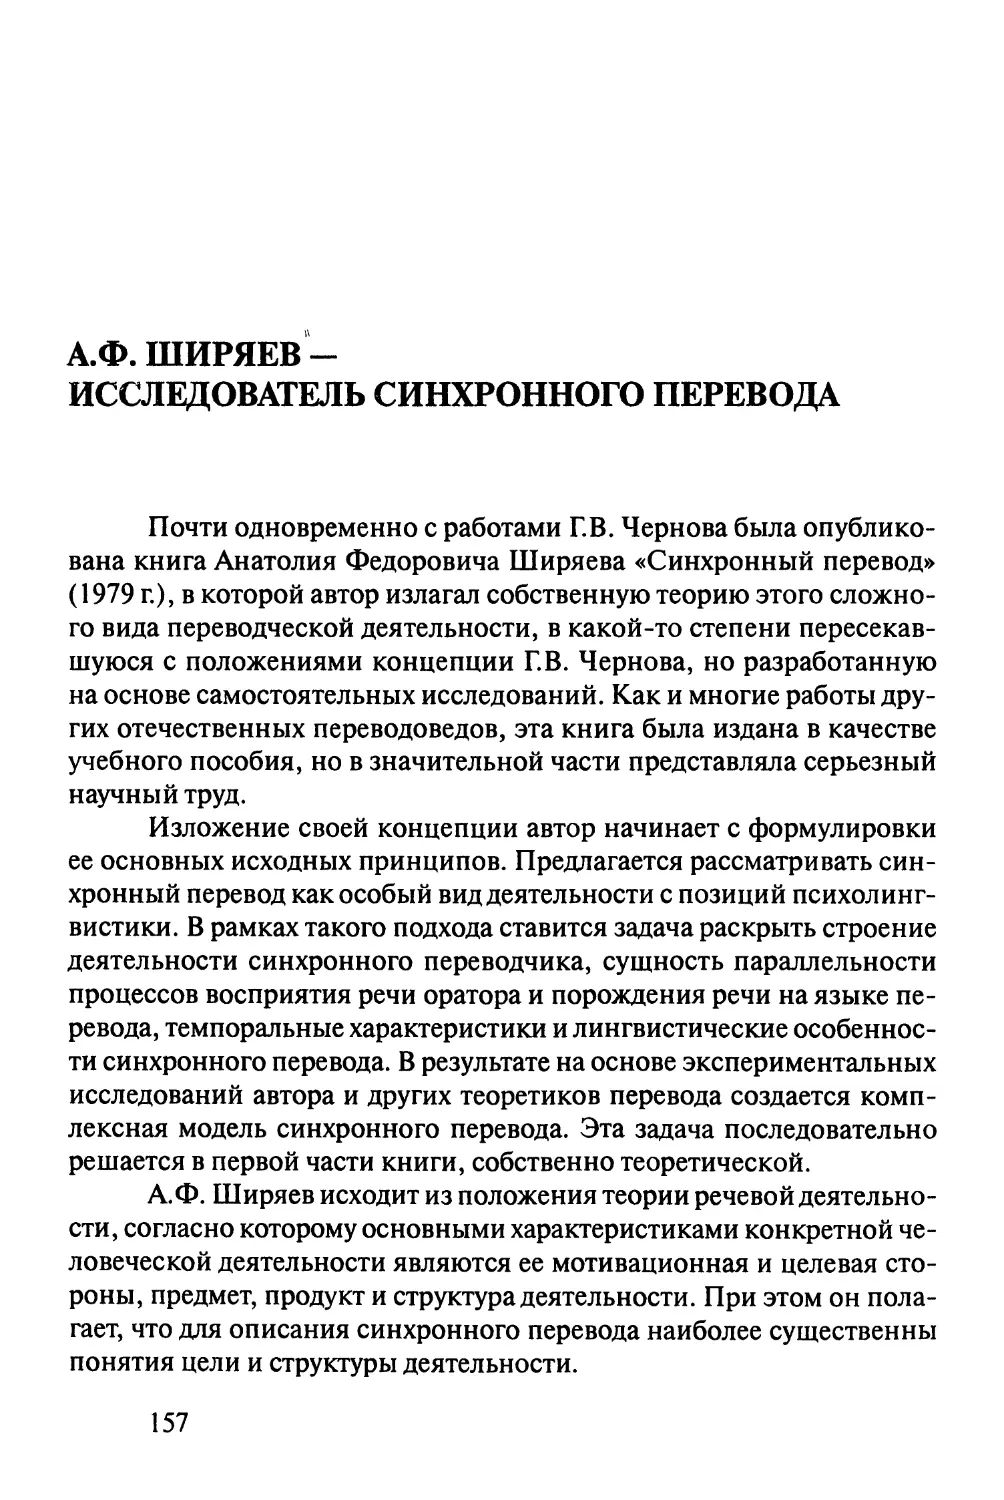 А.Ф.Ширяев - исследователь синхроного перевода